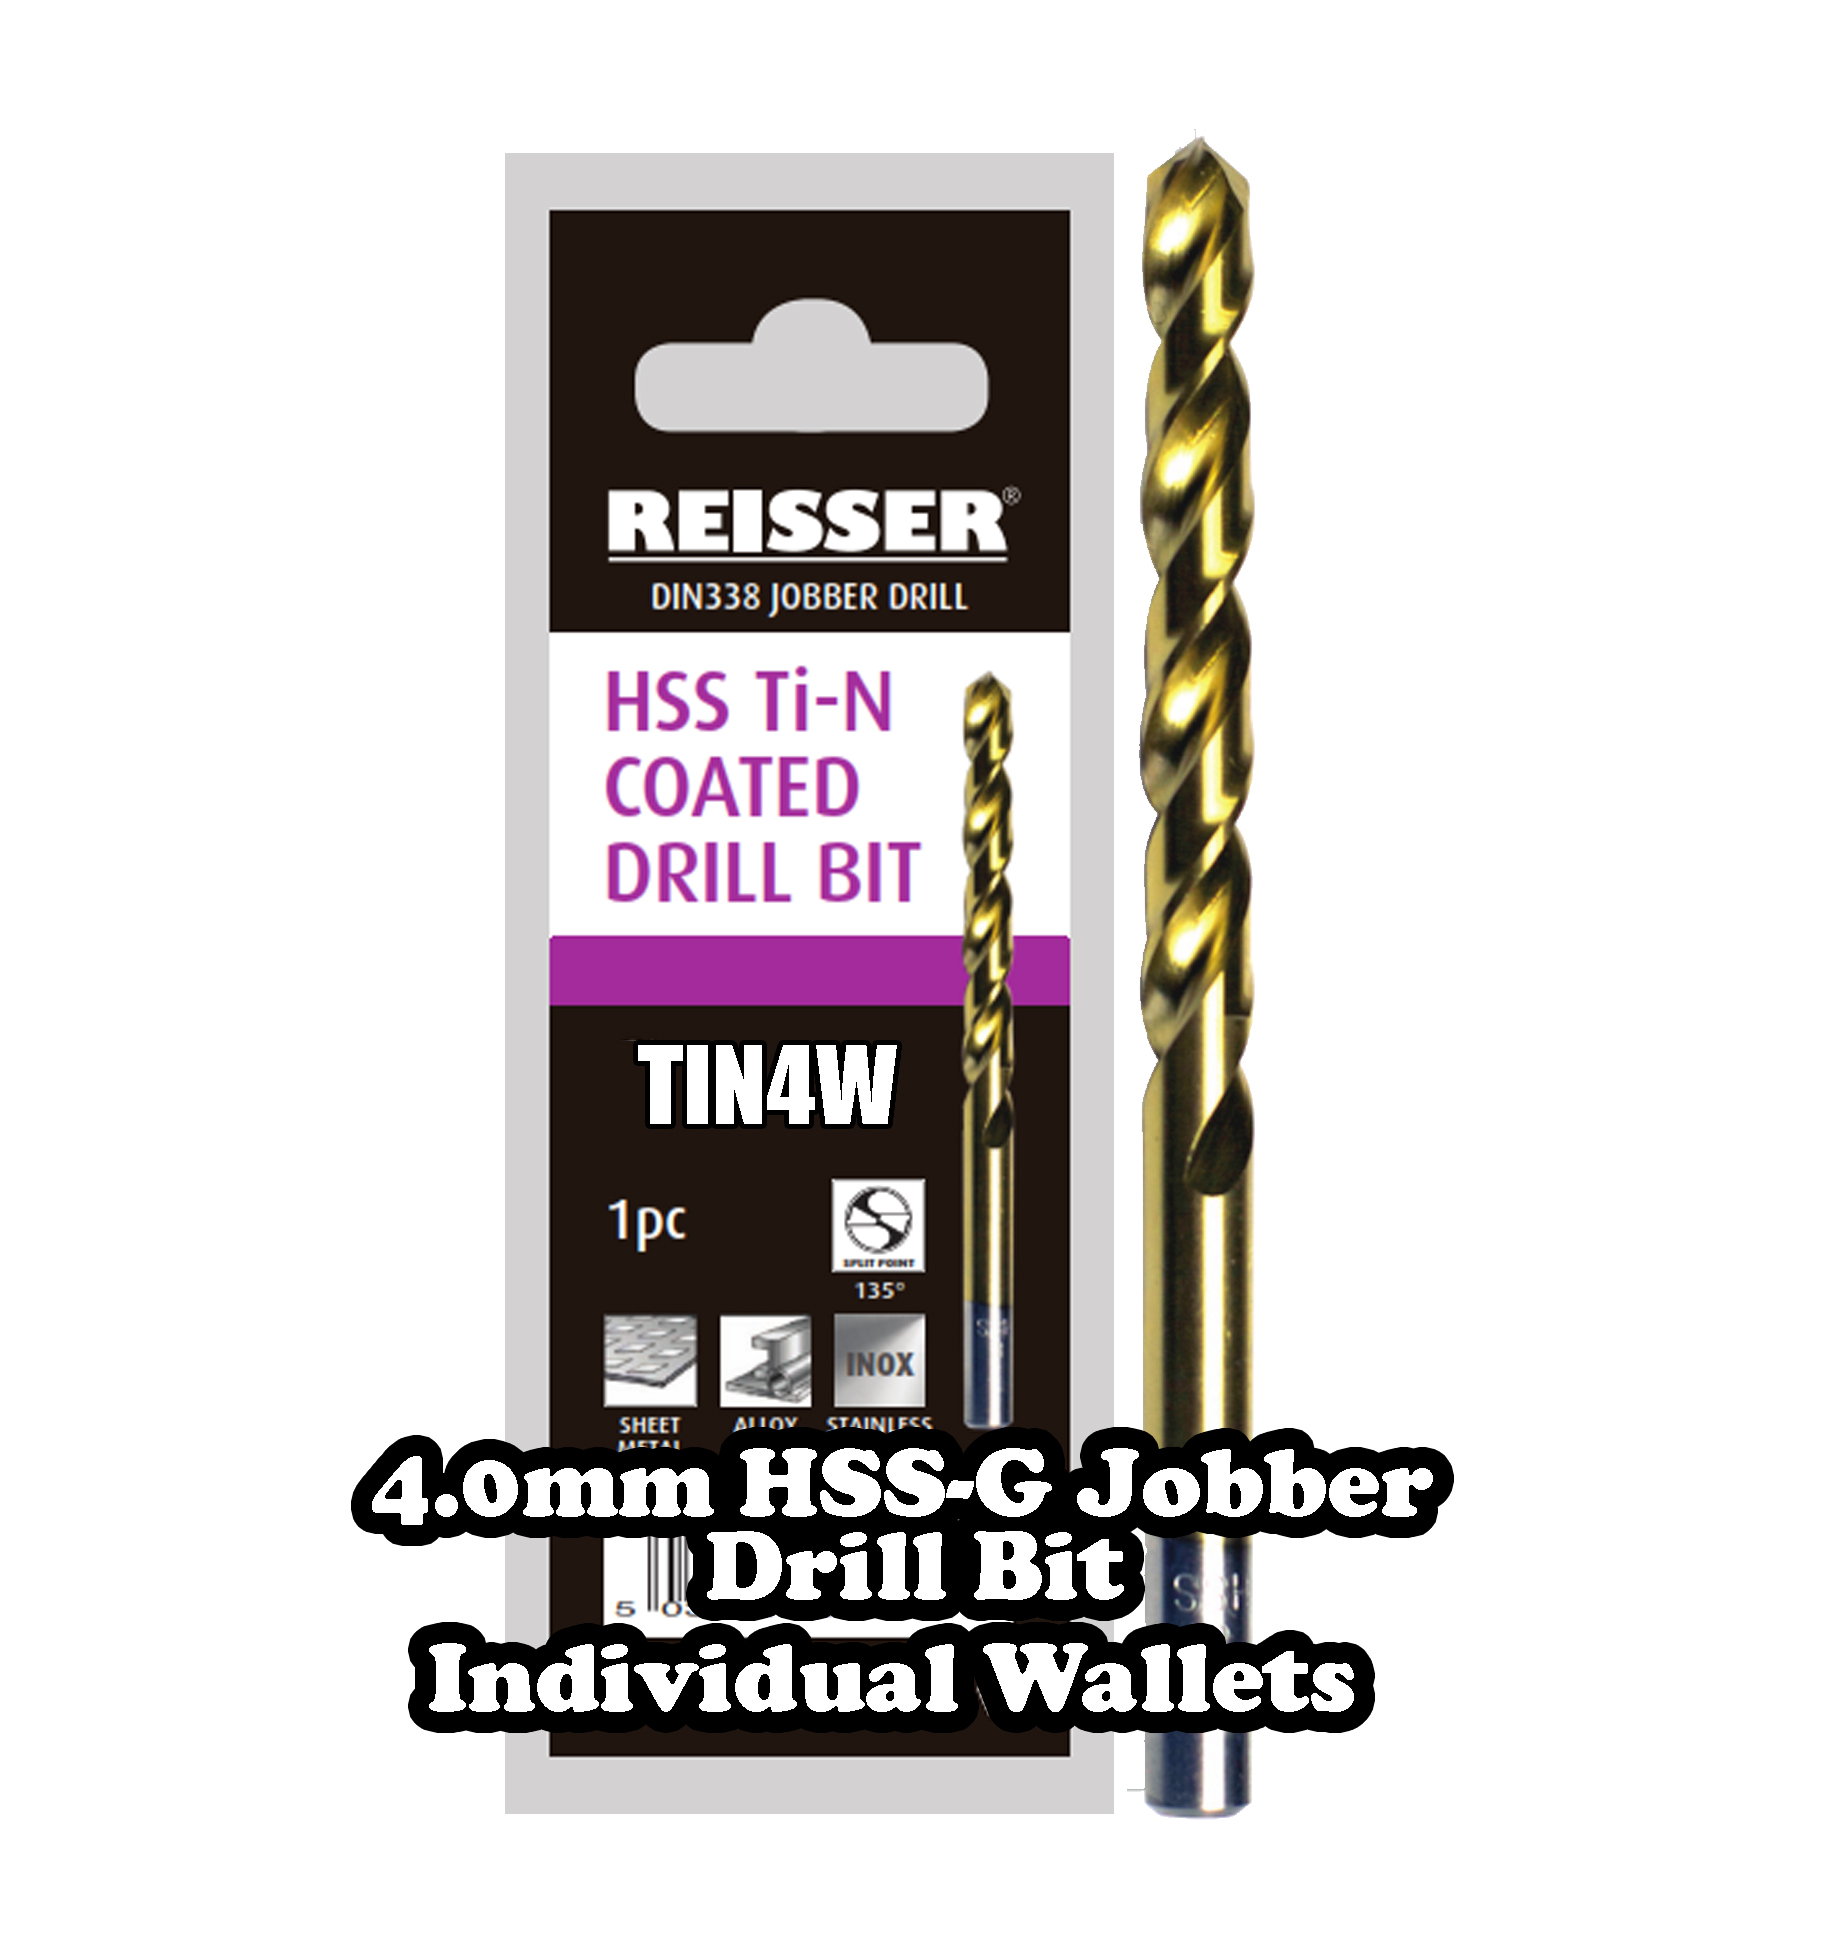 4.0mm HSS Jobber Drill Bit (SINGLE WALLET)